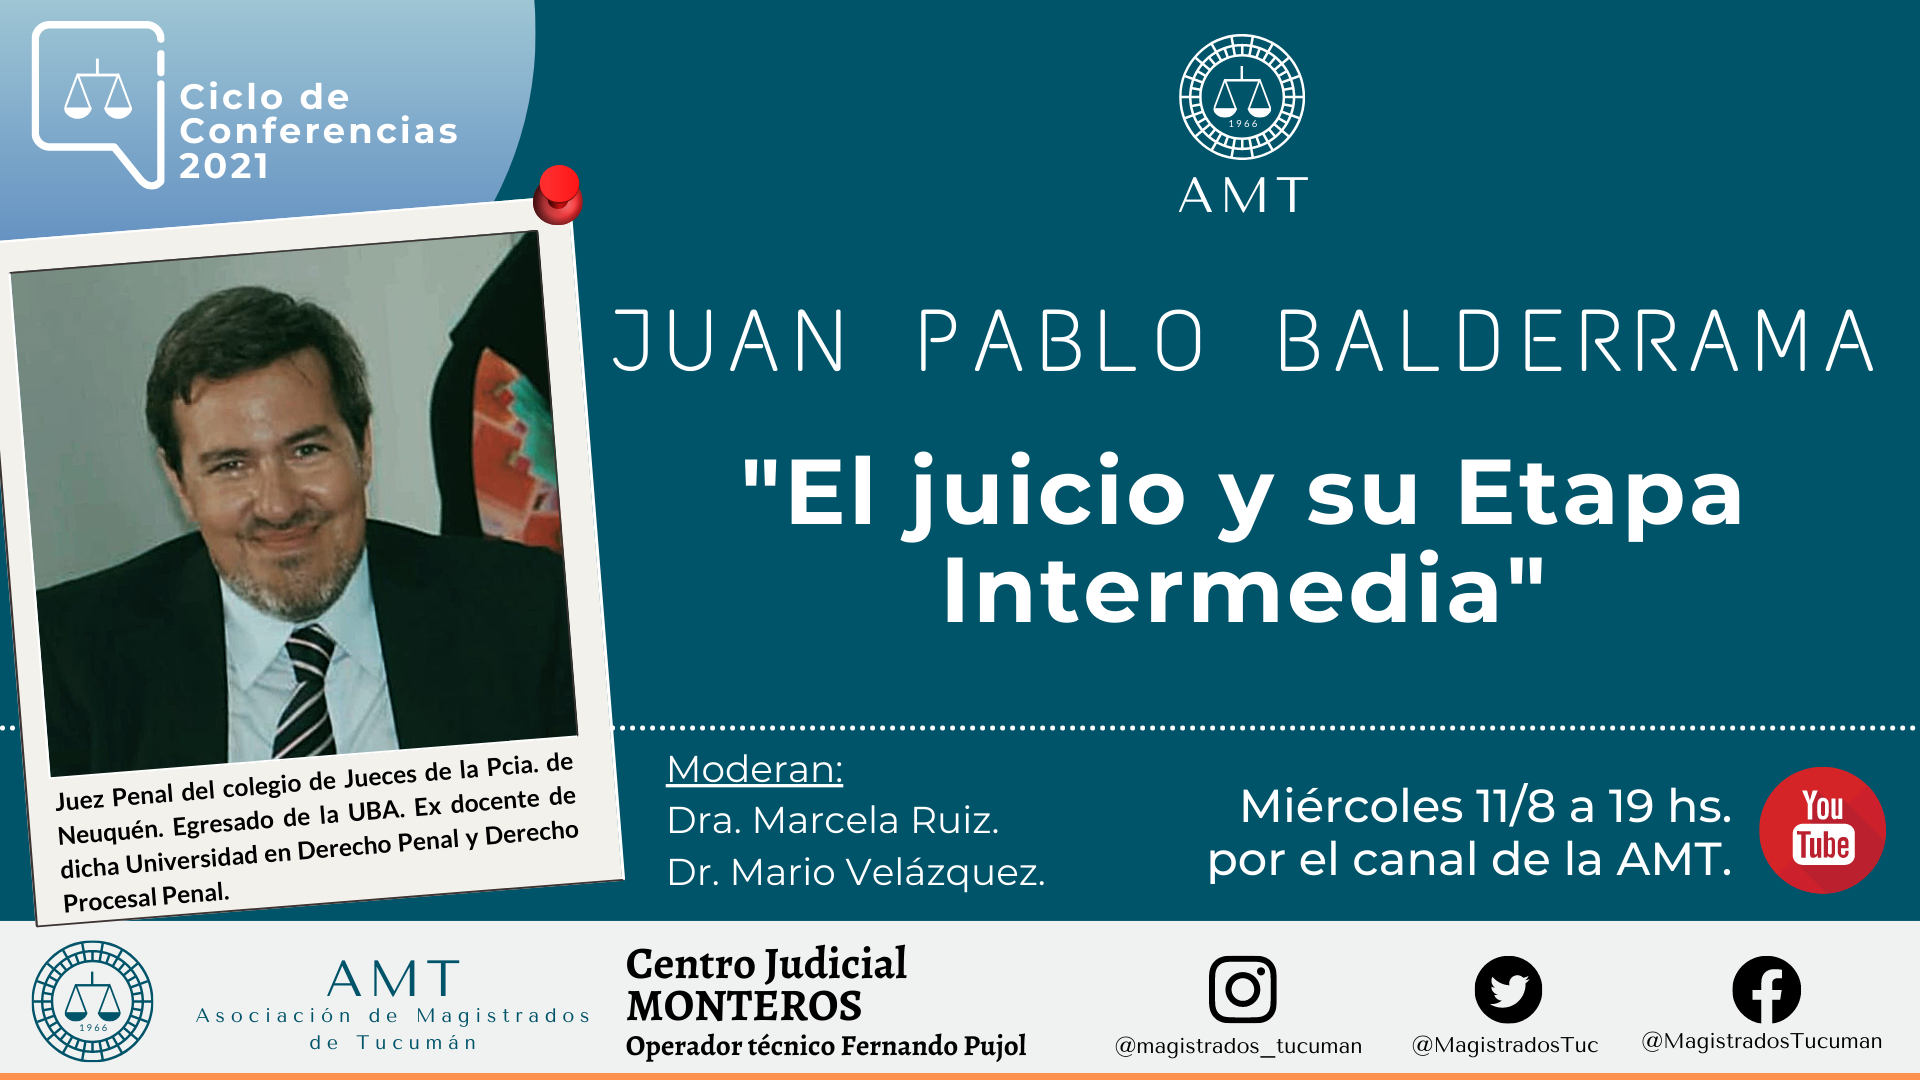 Vuelva a ver la conferencia de Juan Pablo Balderrama «El juicio y su etapa intermedia”